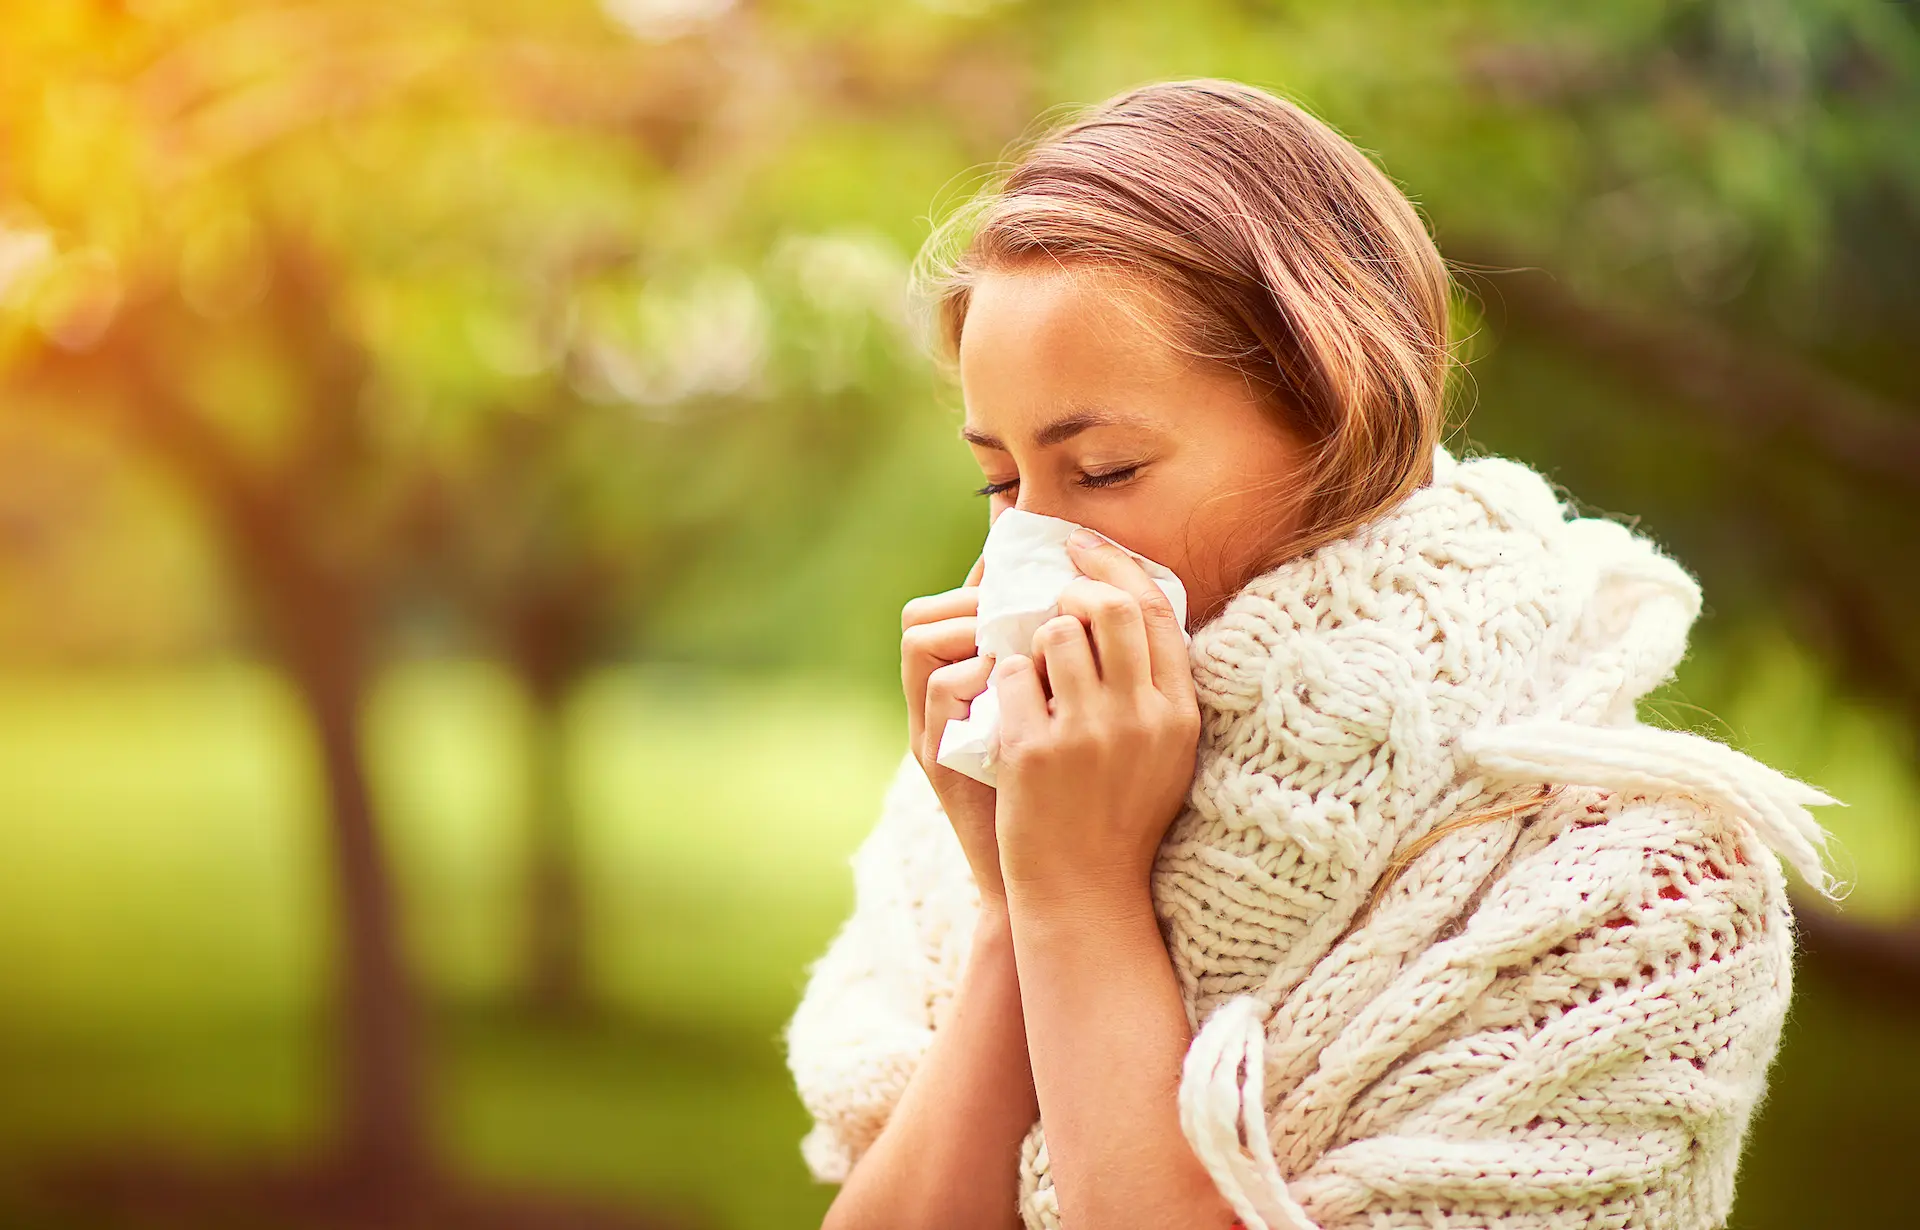 Tips for allergy season